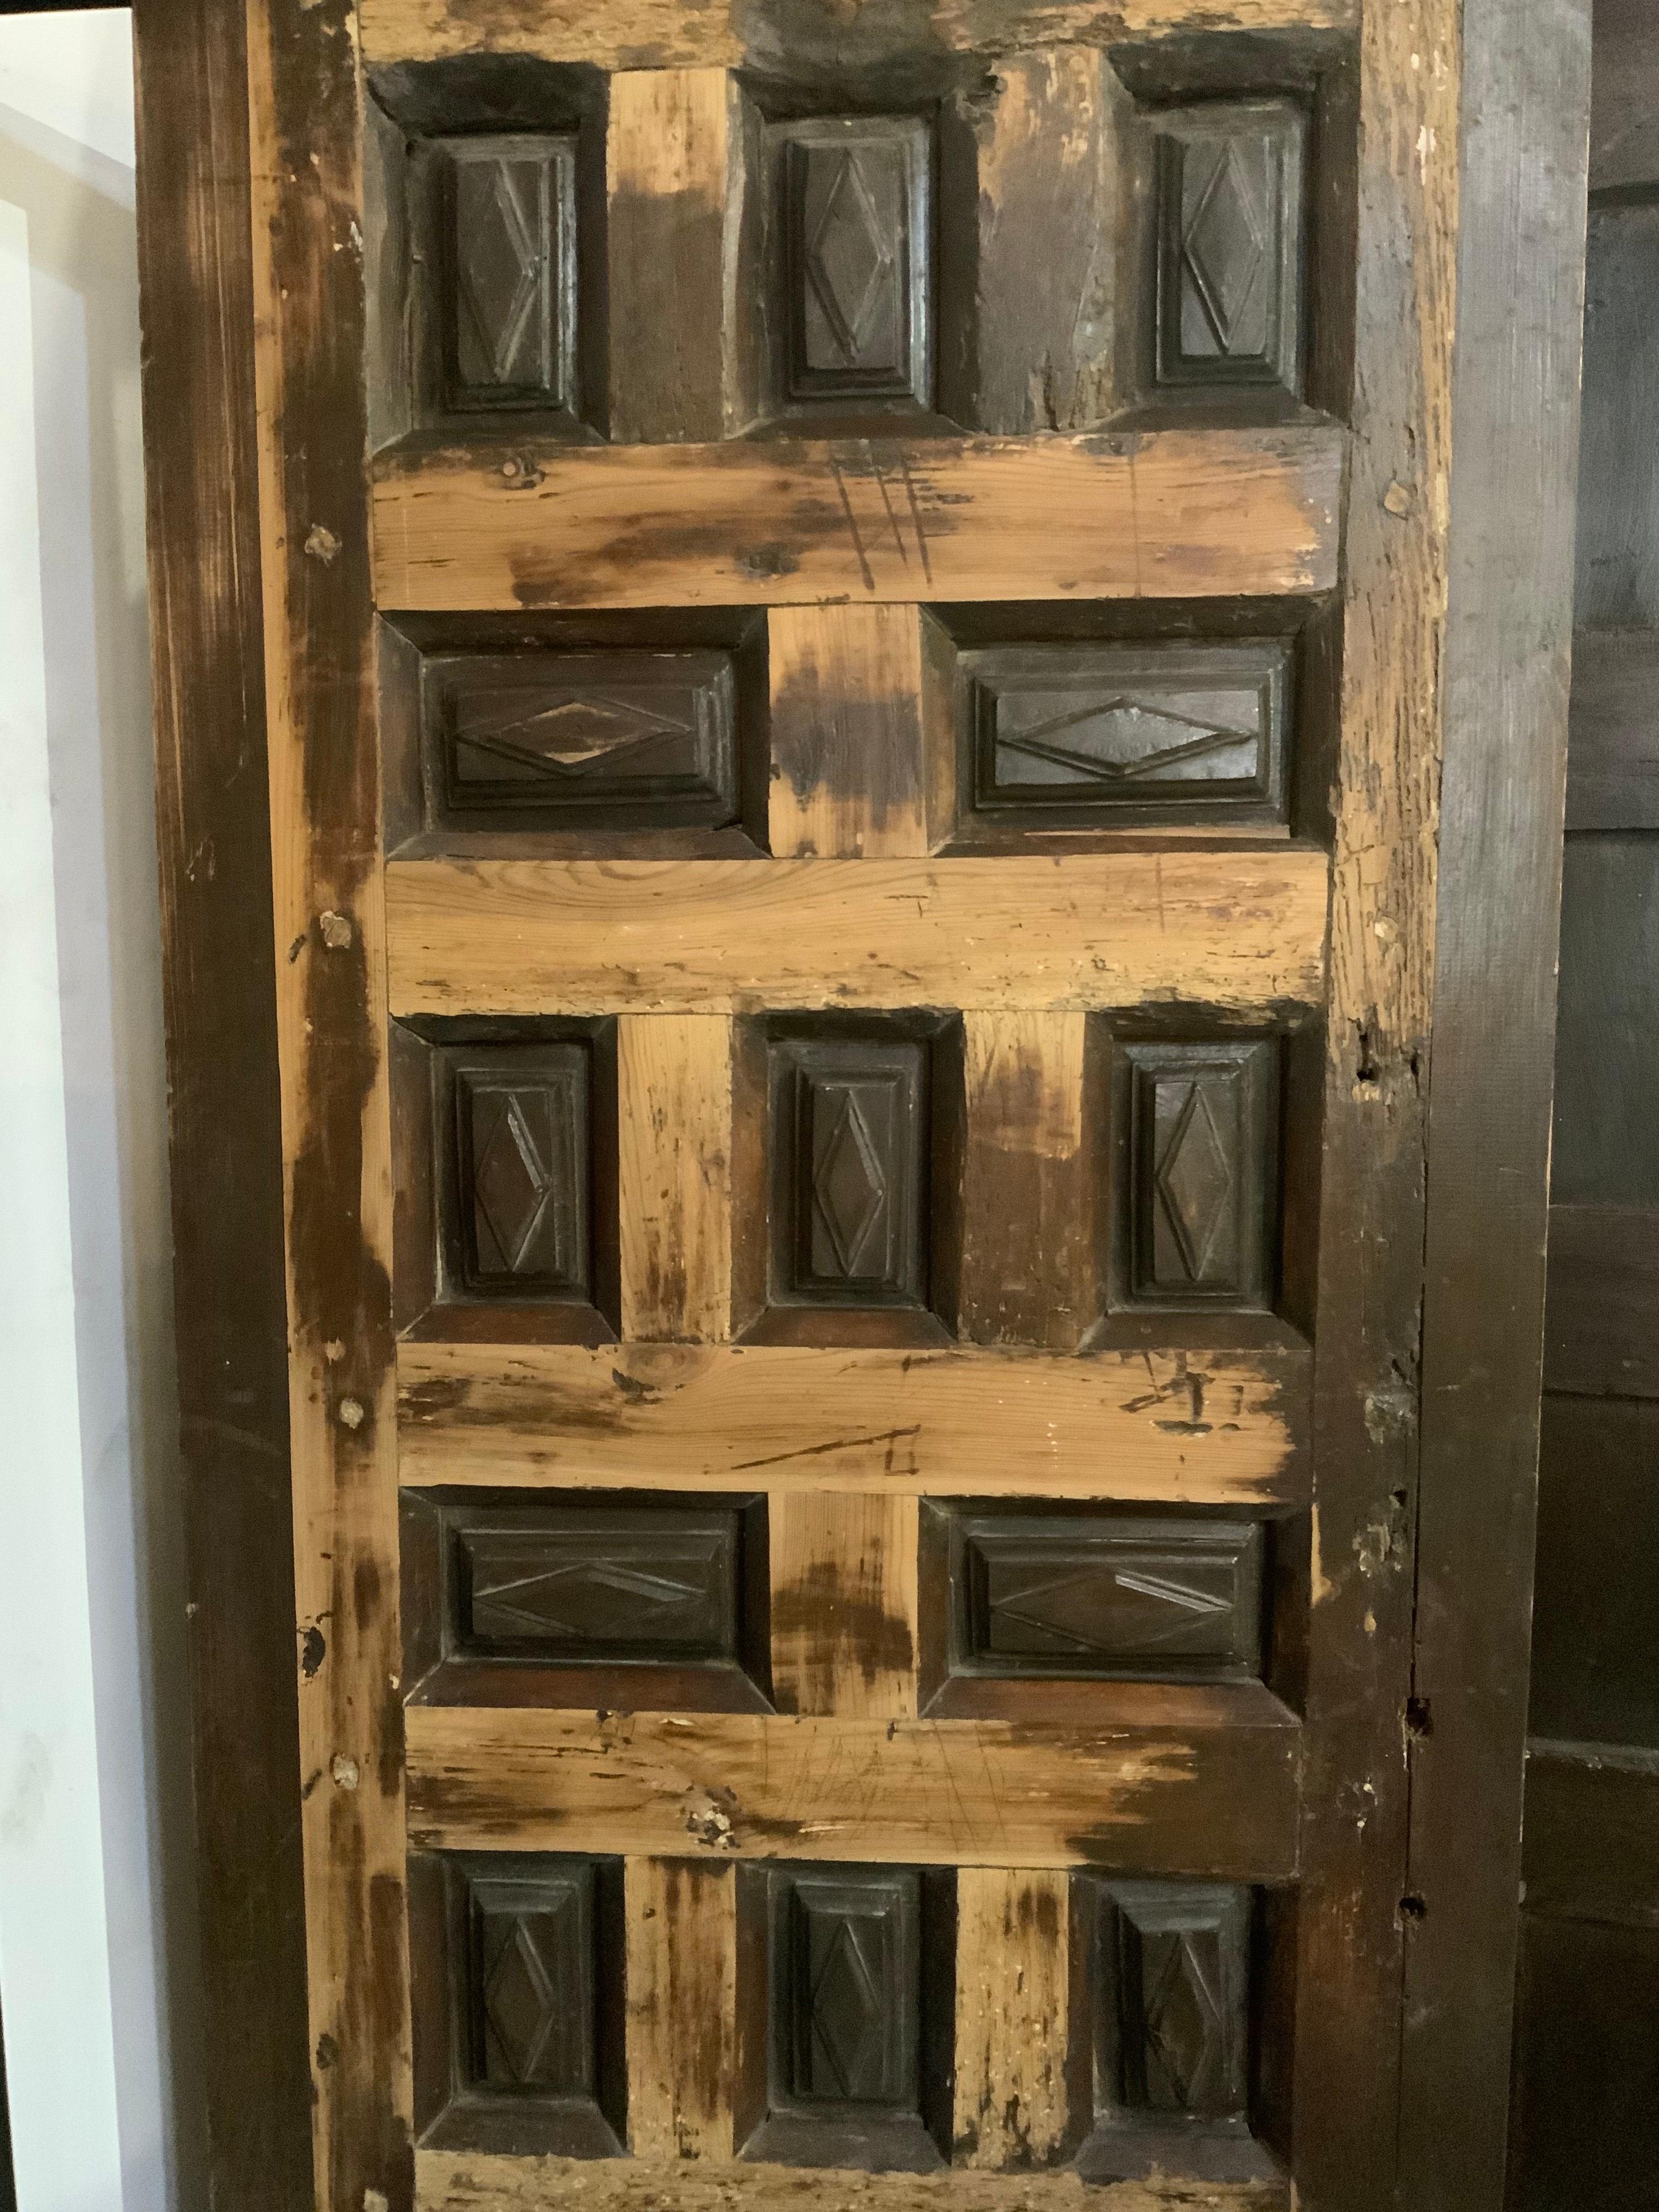 This maple door origins from Spain, circa 1850.